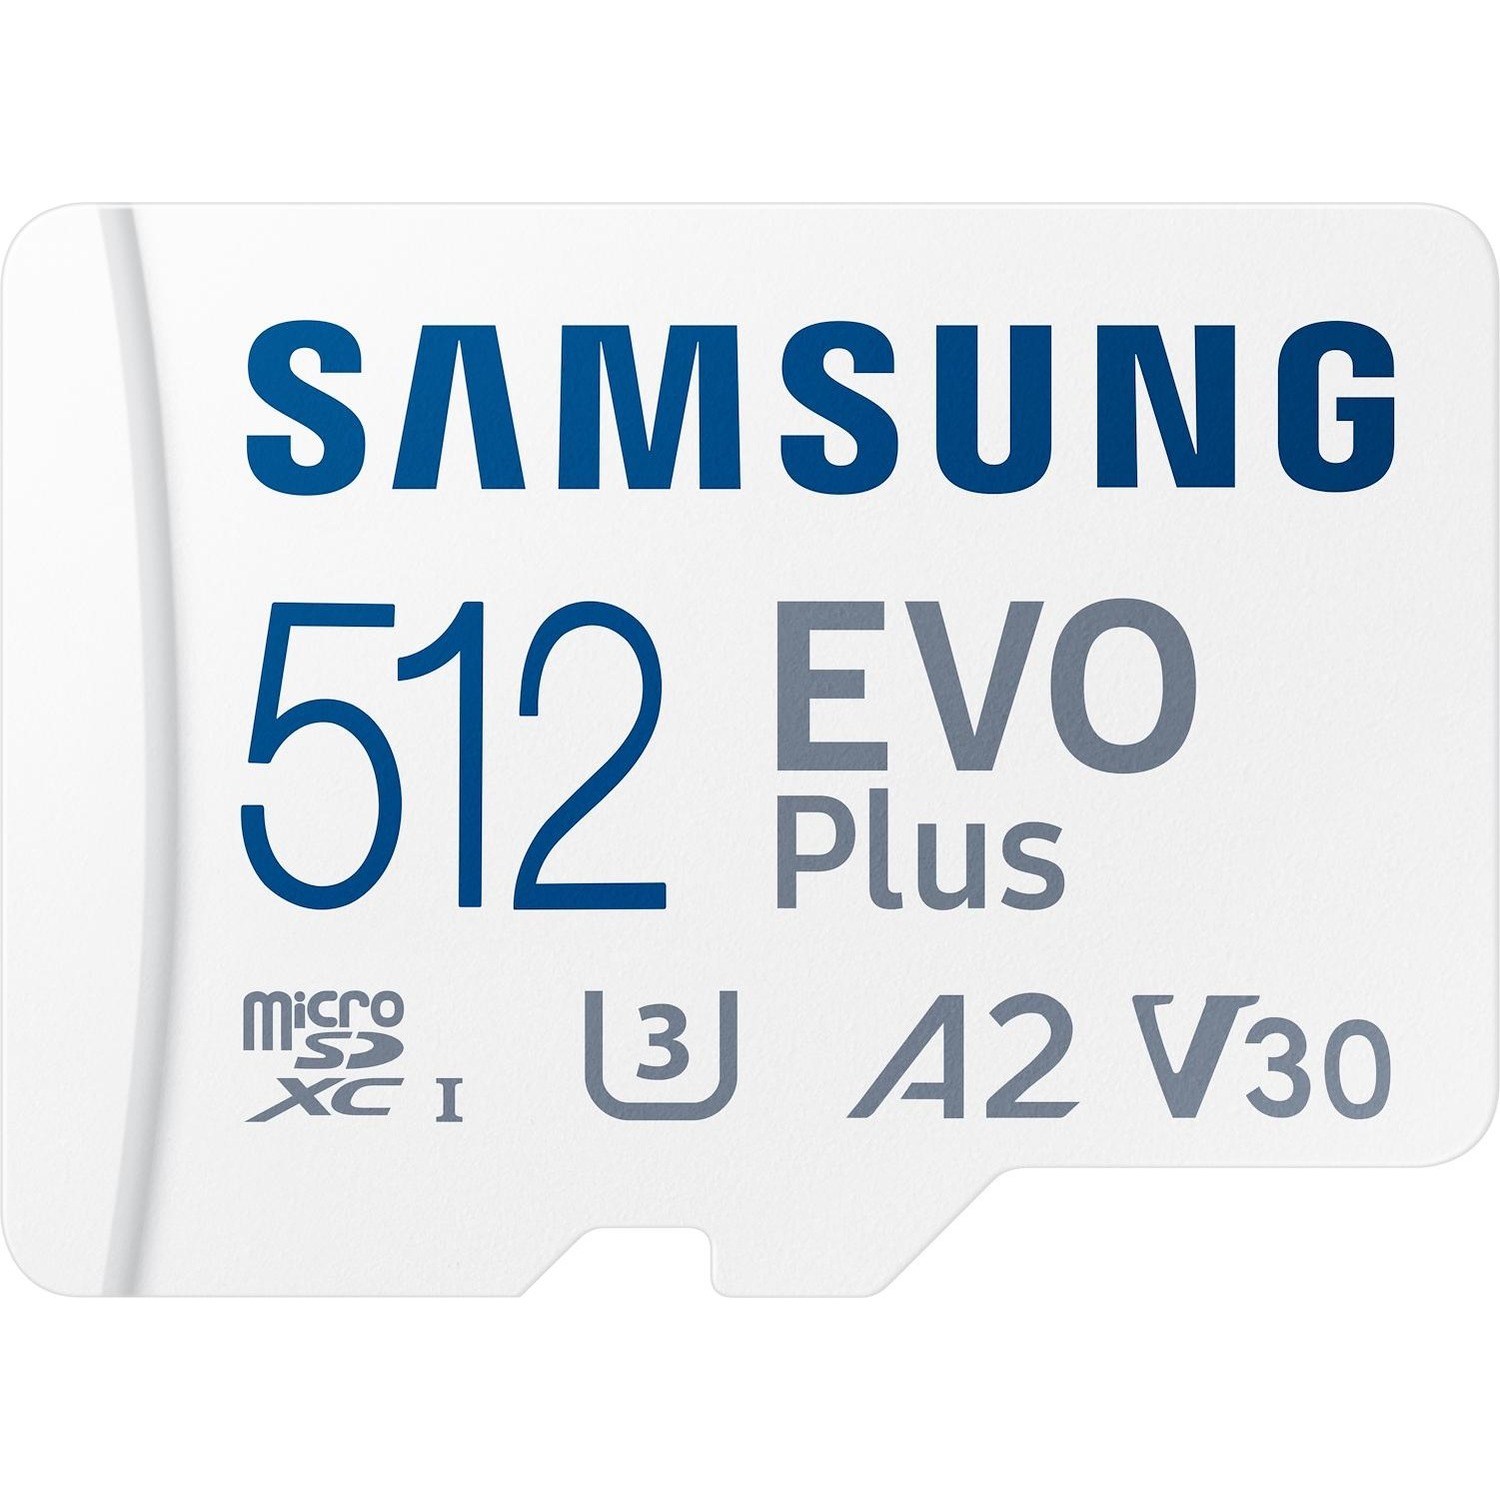 Immagine per MicroSD Samsung Evo+ 512 GB da DIMOStore